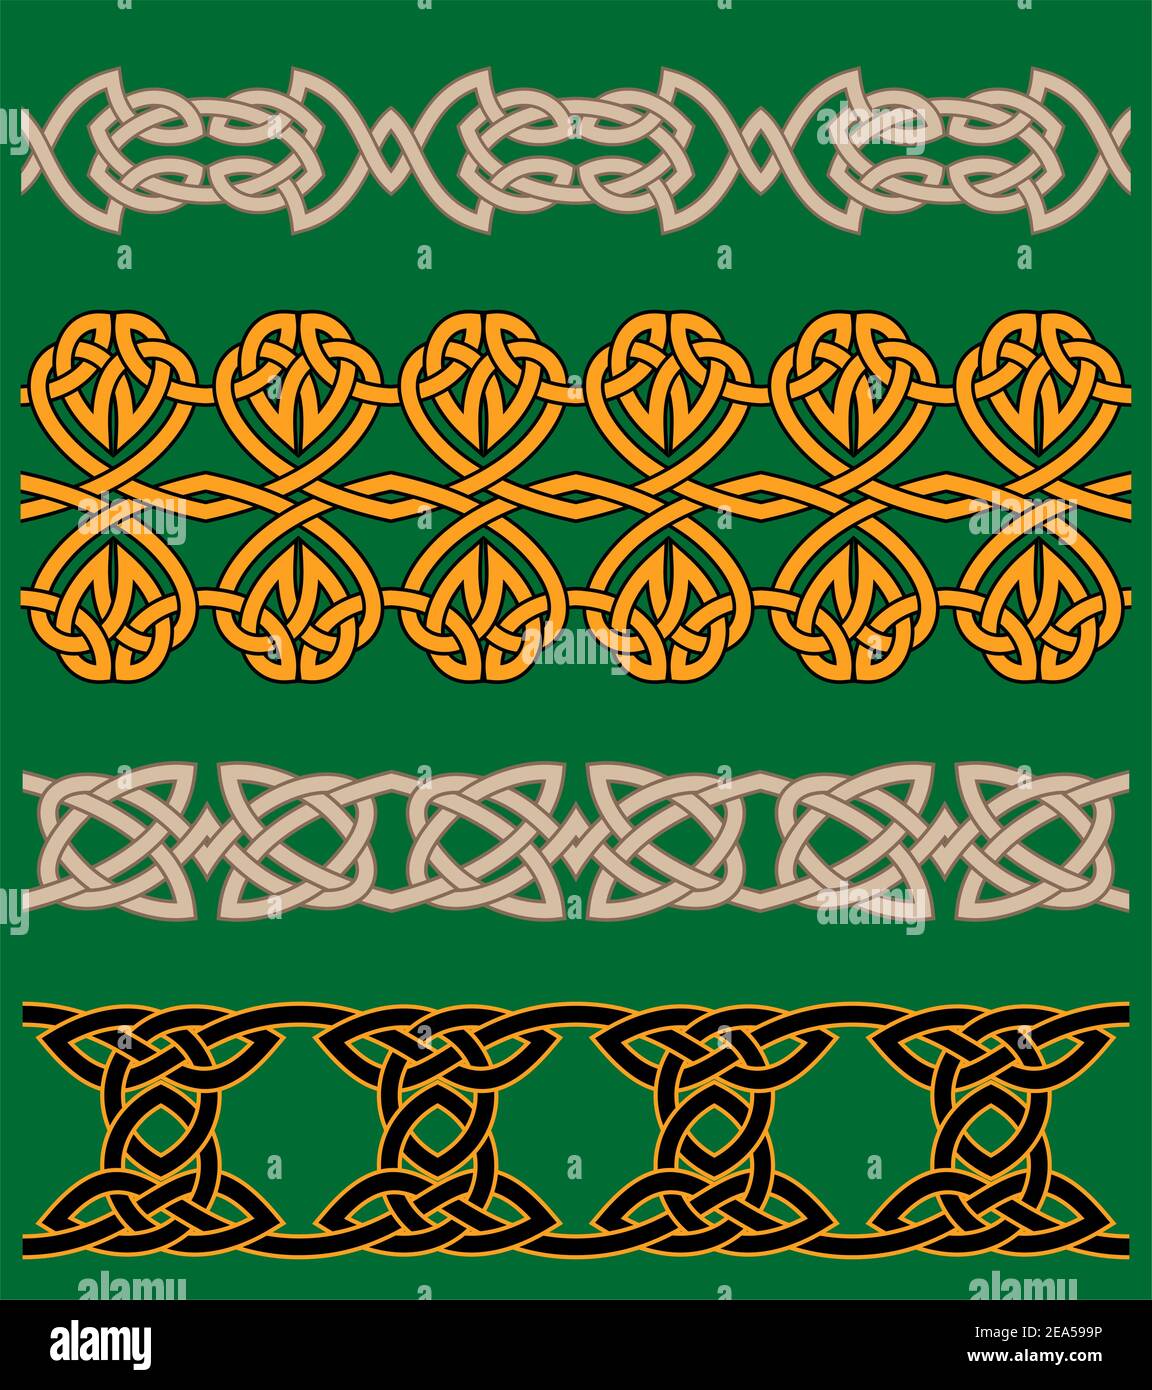 Keltische Verzierungen und Ornamente für Ornamente und Dekoration Stock Vektor